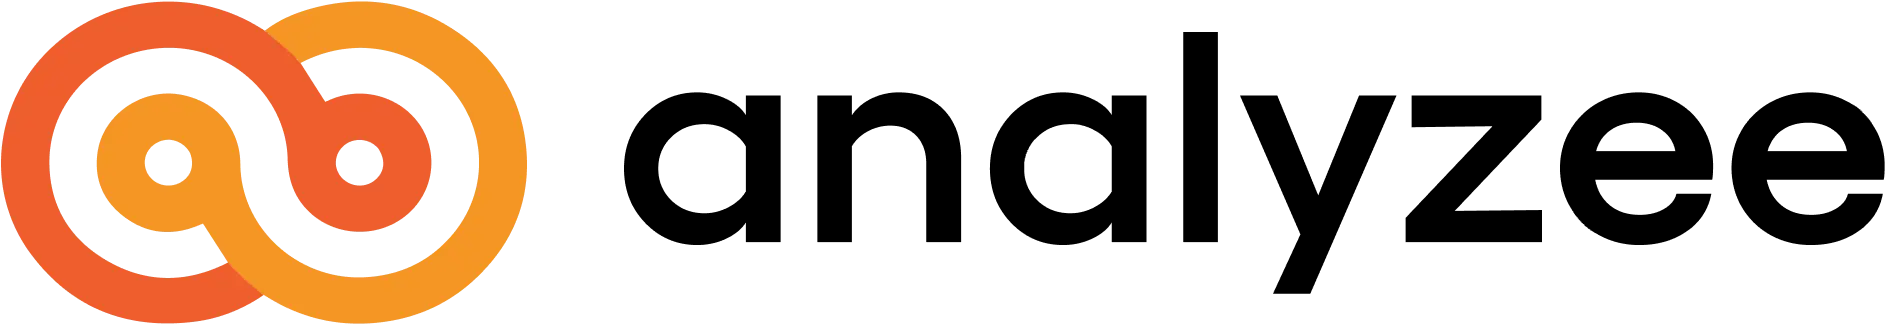 Analyzee logo